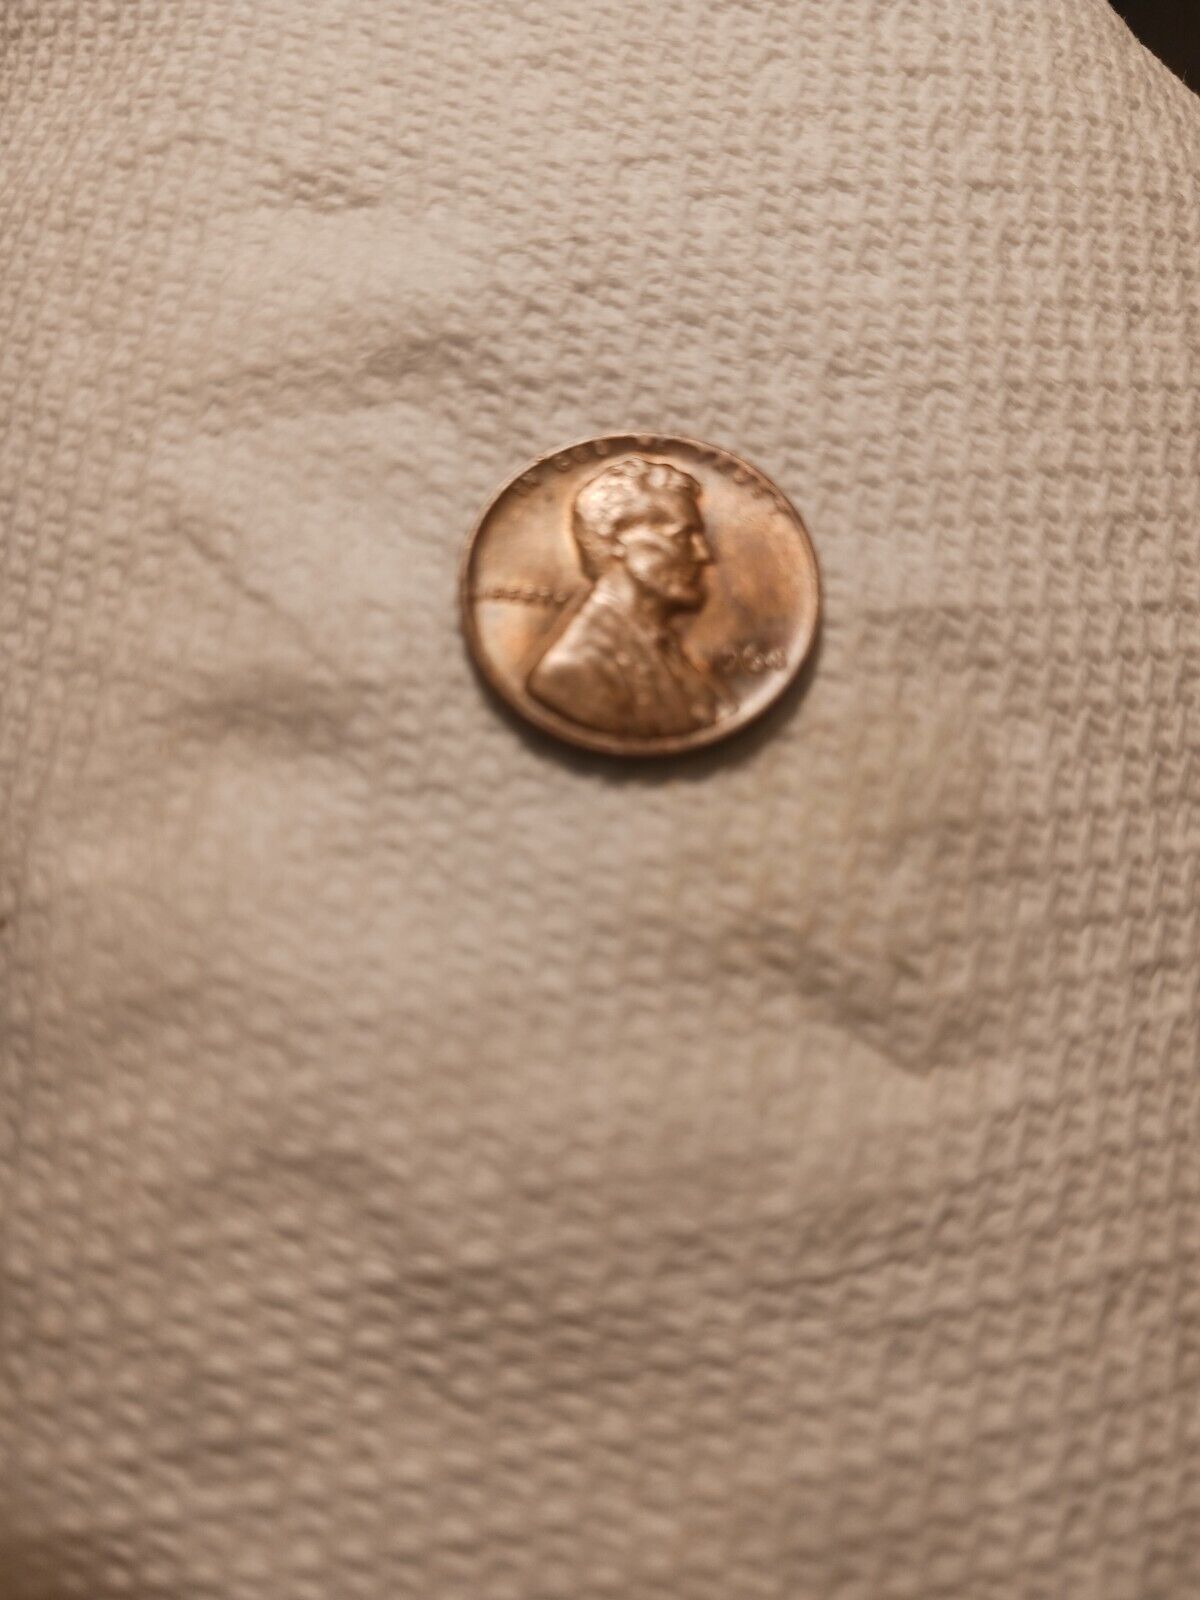 1964 Lincoln Penny No Mint Mark. L, RIM ERROR, W ERROR  good condition